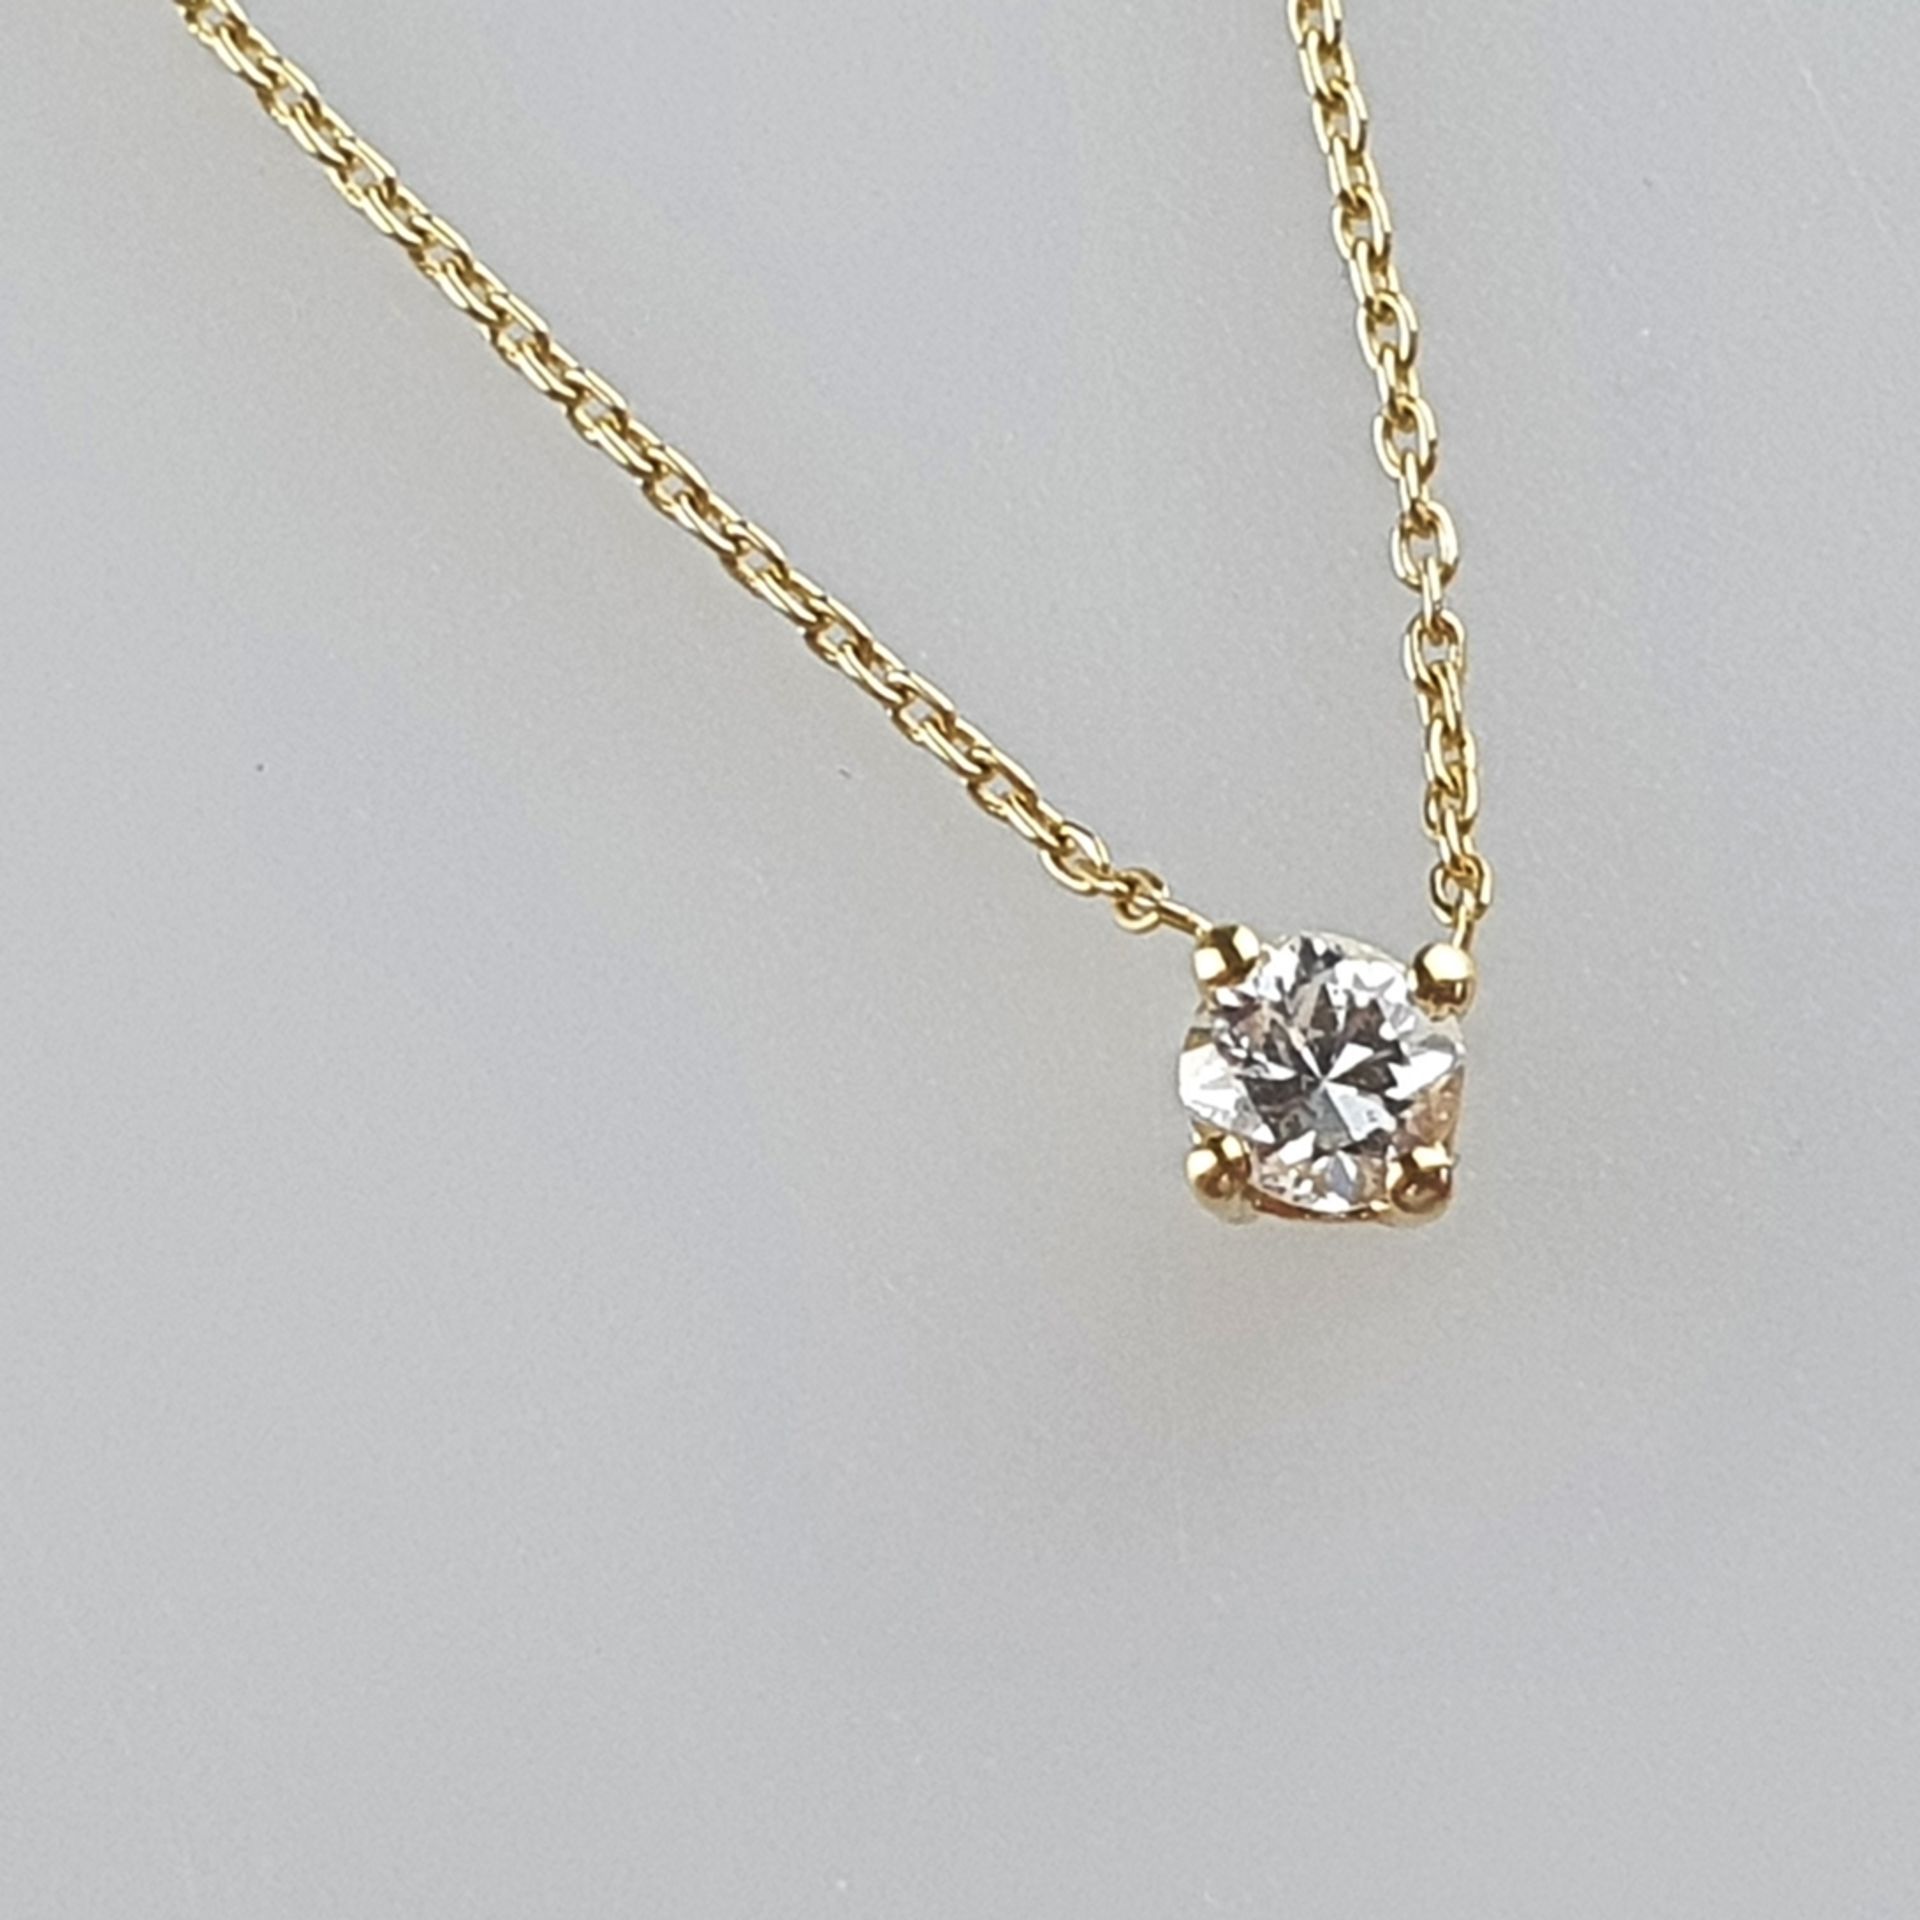 Diamantanhänger mit zarter Kette - Gelbgold 750/000, gestempelt, Anhänger besetzt mit 1 Diamanten v